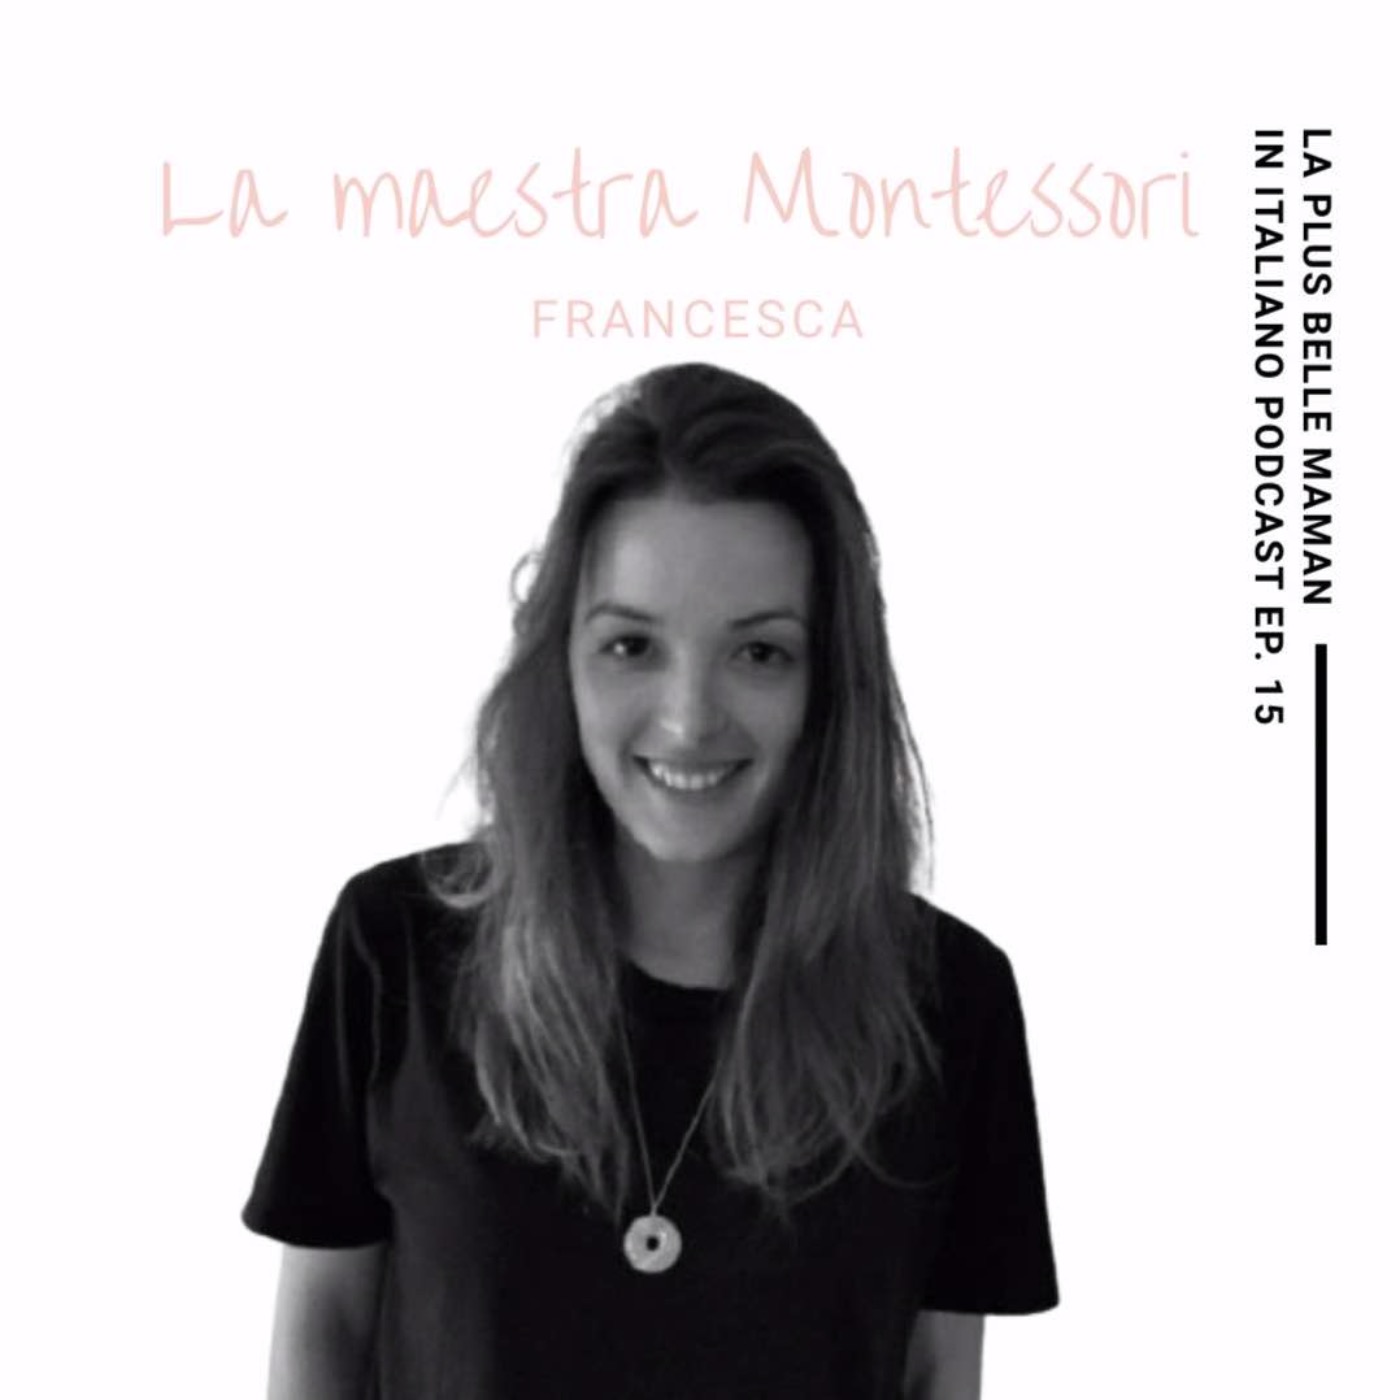 🇮🇹La maestra Montessori con Francesca di @tousjoursmontessori